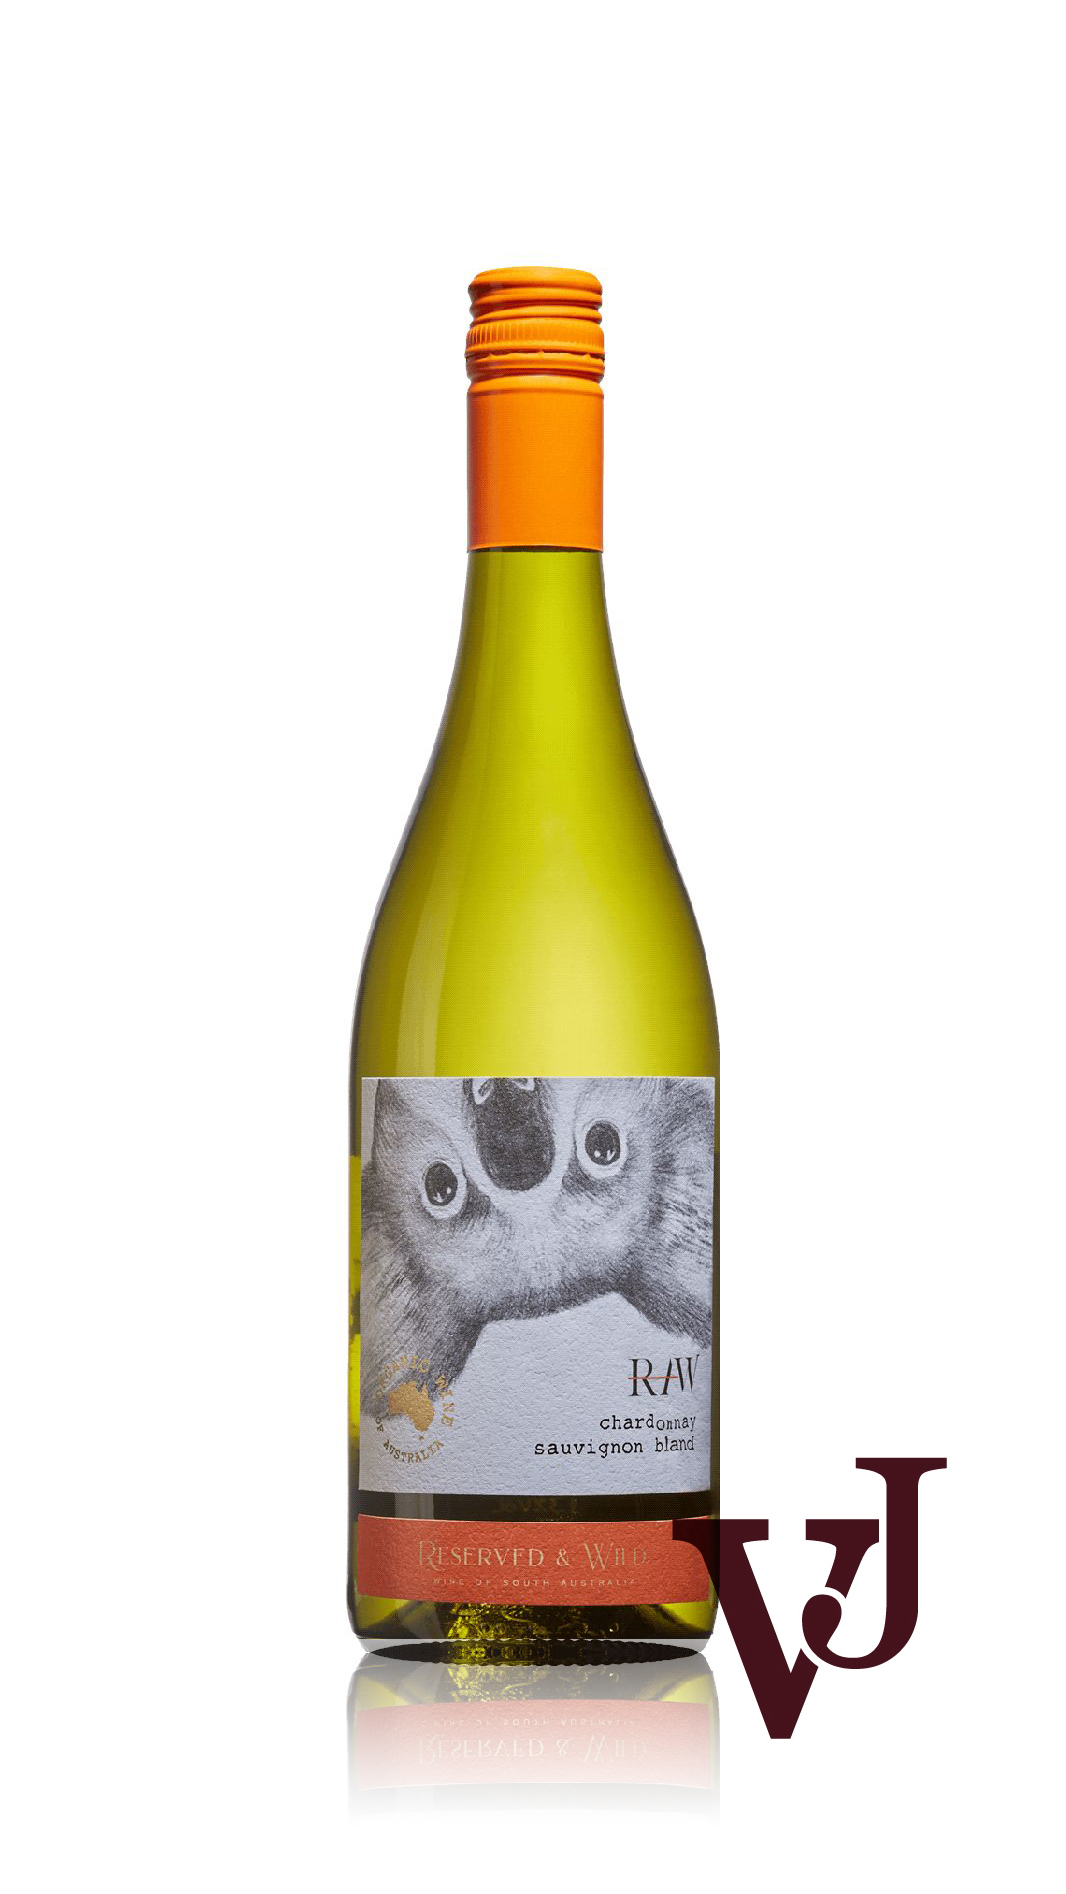 Vitt Vin - Reserved & Wild Organic Chardonnay Sauvignon Blanc artikel nummer 2003201 från producenten Vins Biecher från området Australien